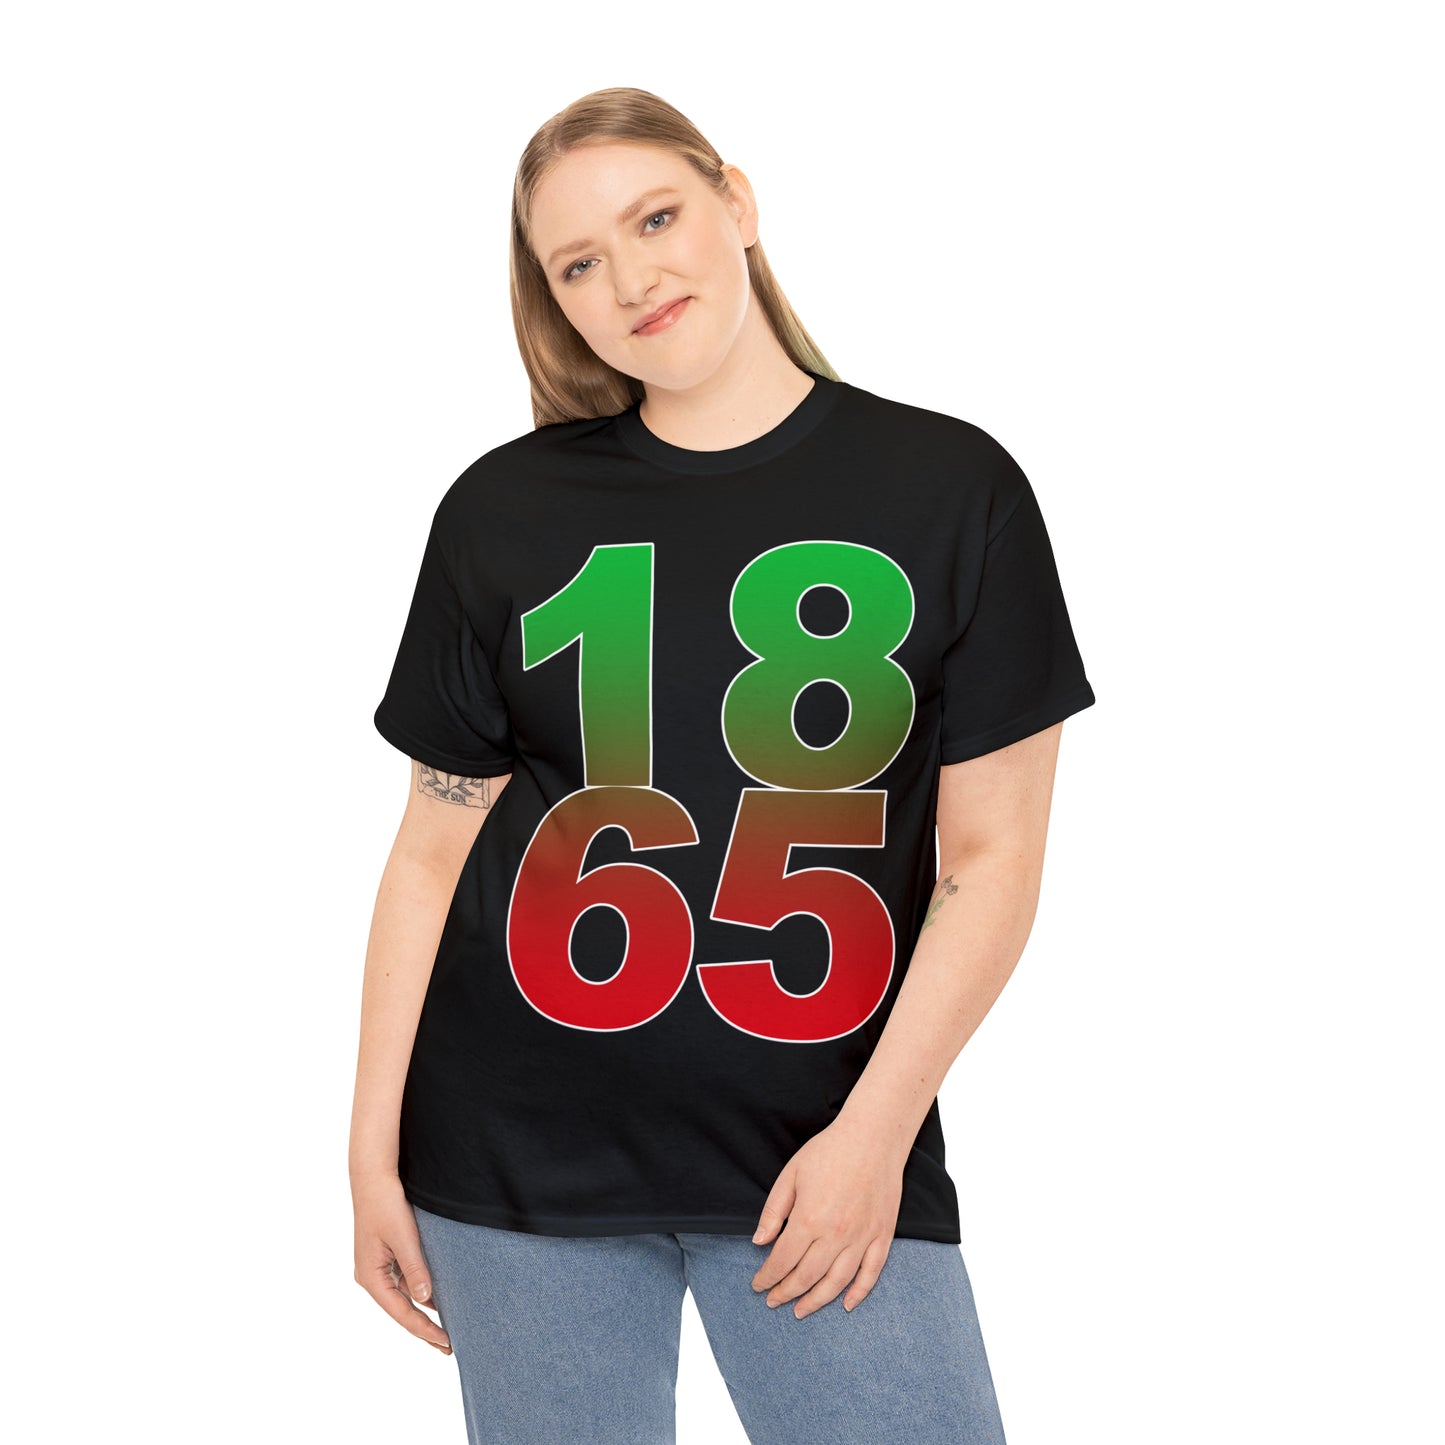 1865 Shirt - Up to 5X